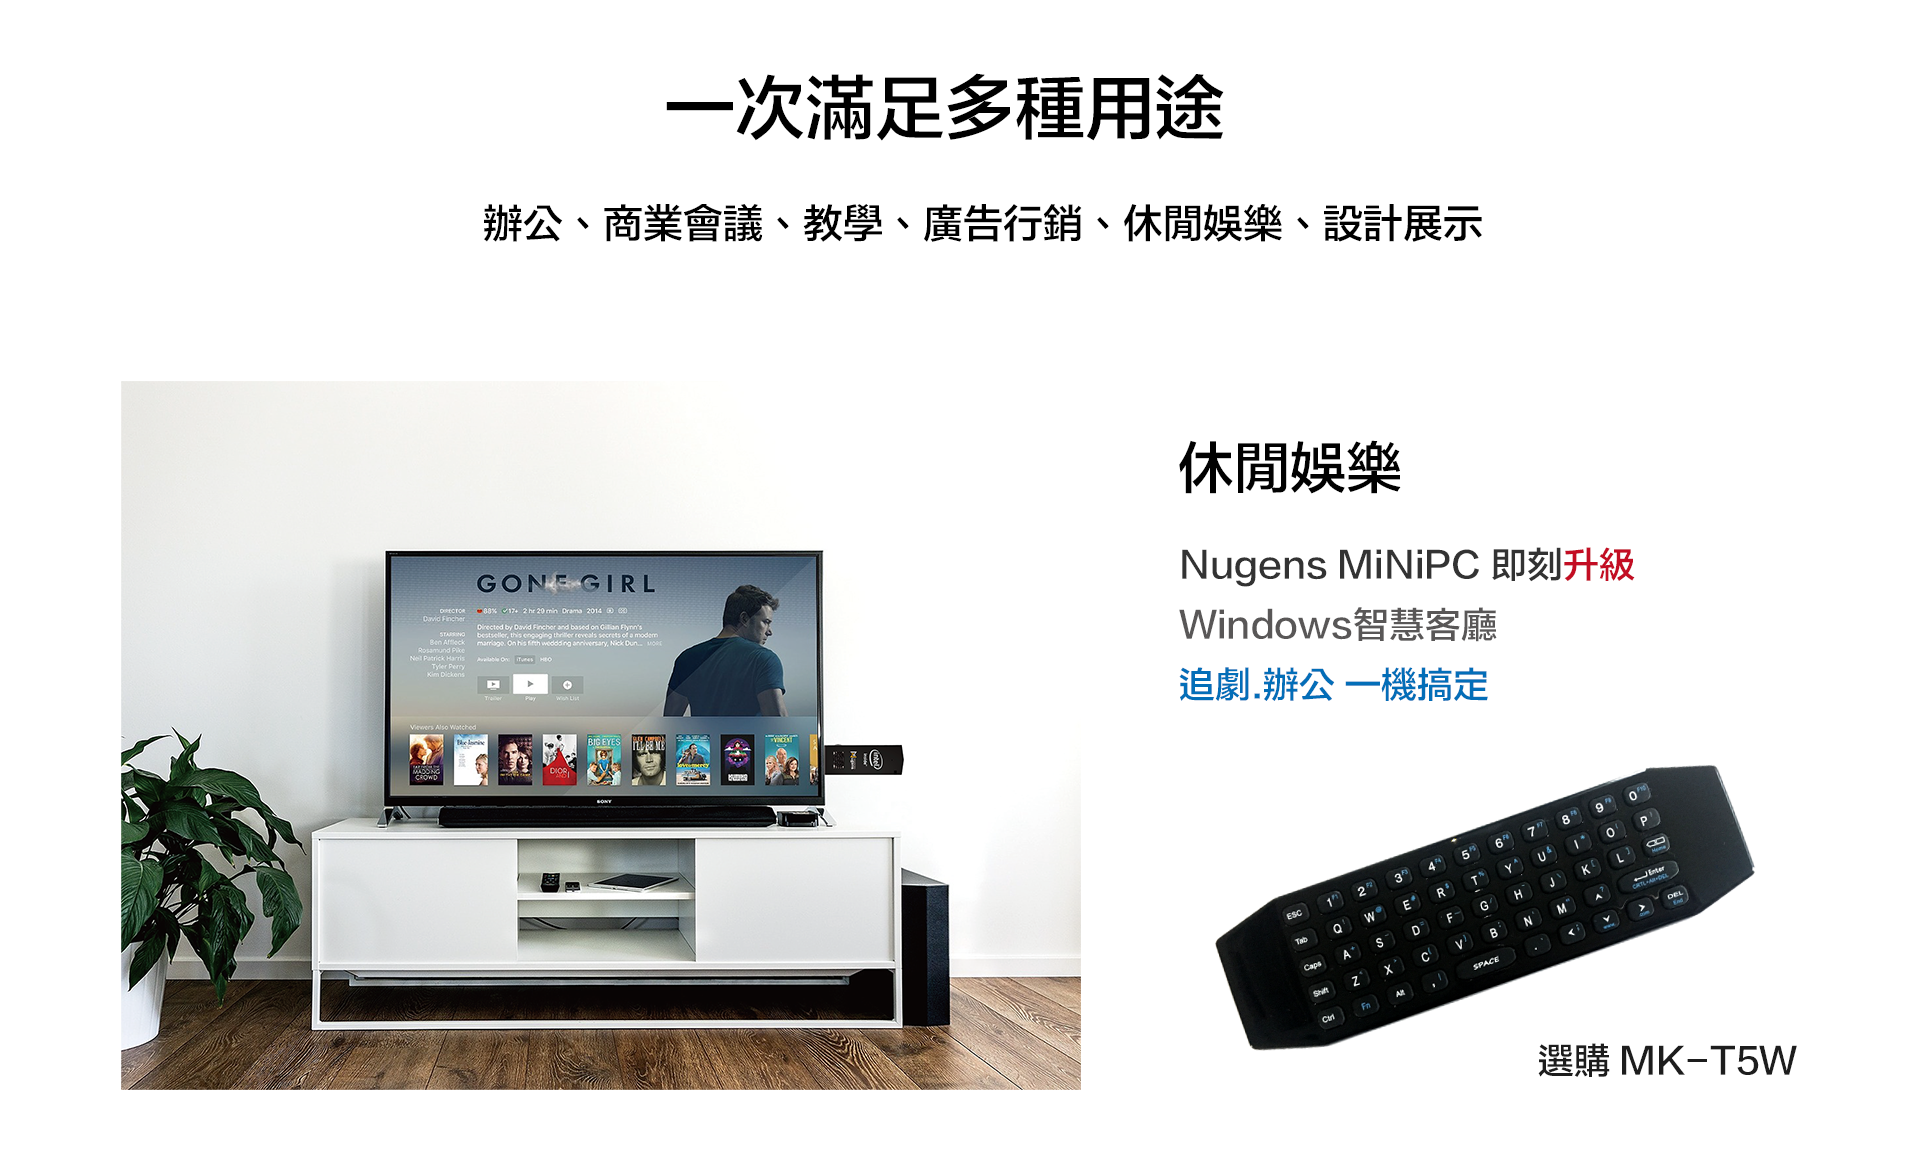 休閒娛樂,Nugens MiniPC即刻升級windows智慧客廳。